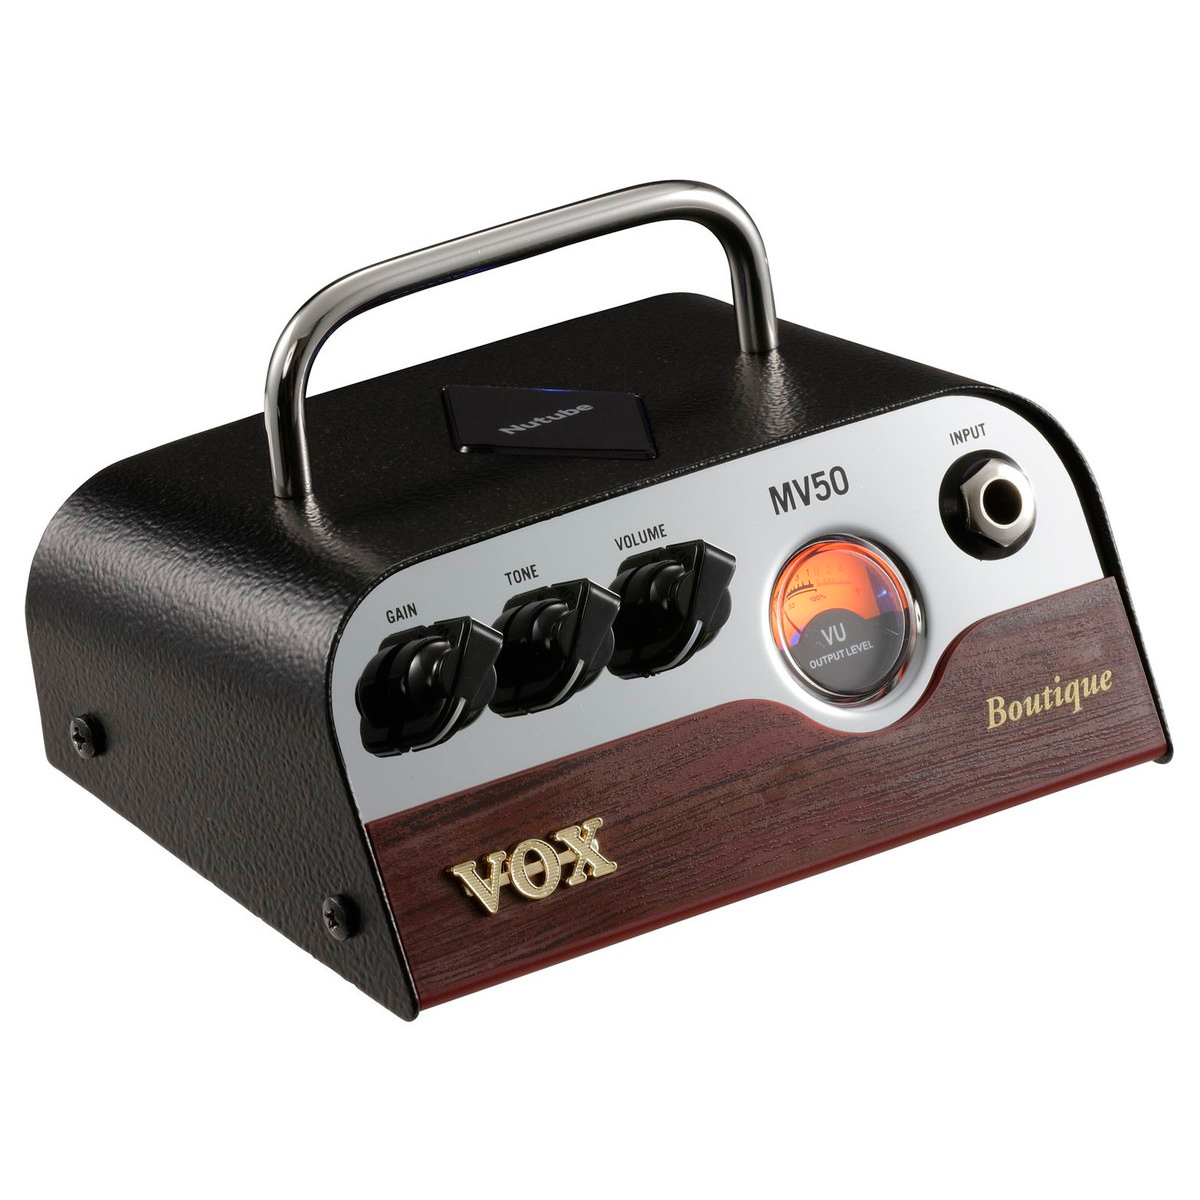 Vox MV50 Boutique - Cabezal para guitarra eléctrica